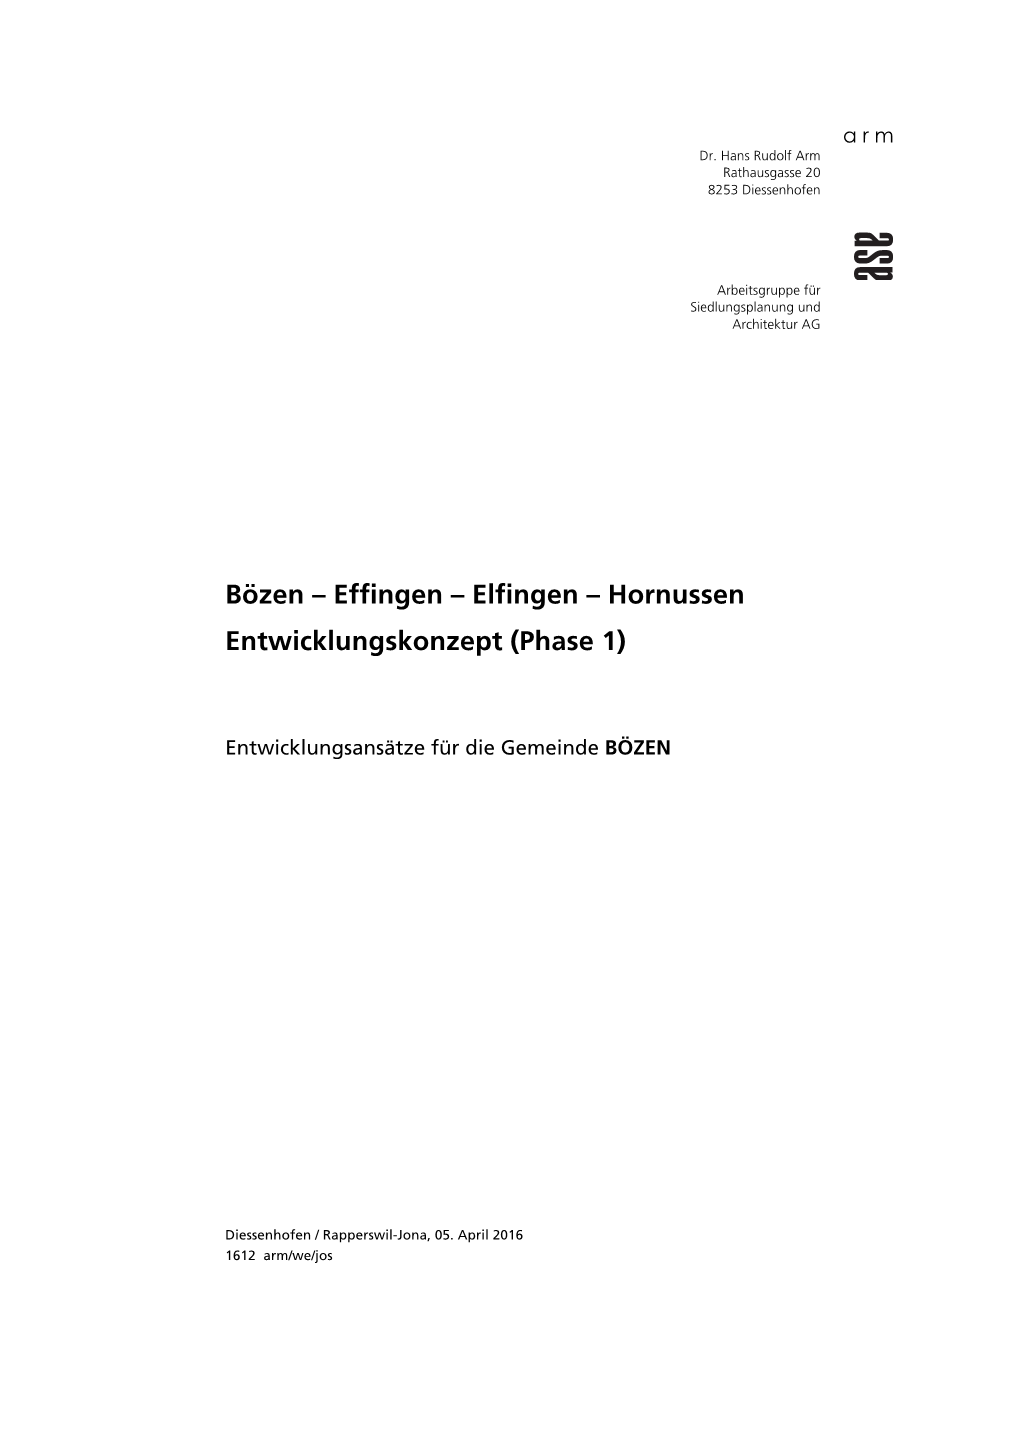 Bözen – Effingen – Elfingen – Hornussen Entwicklungskonzept (Phase 1)